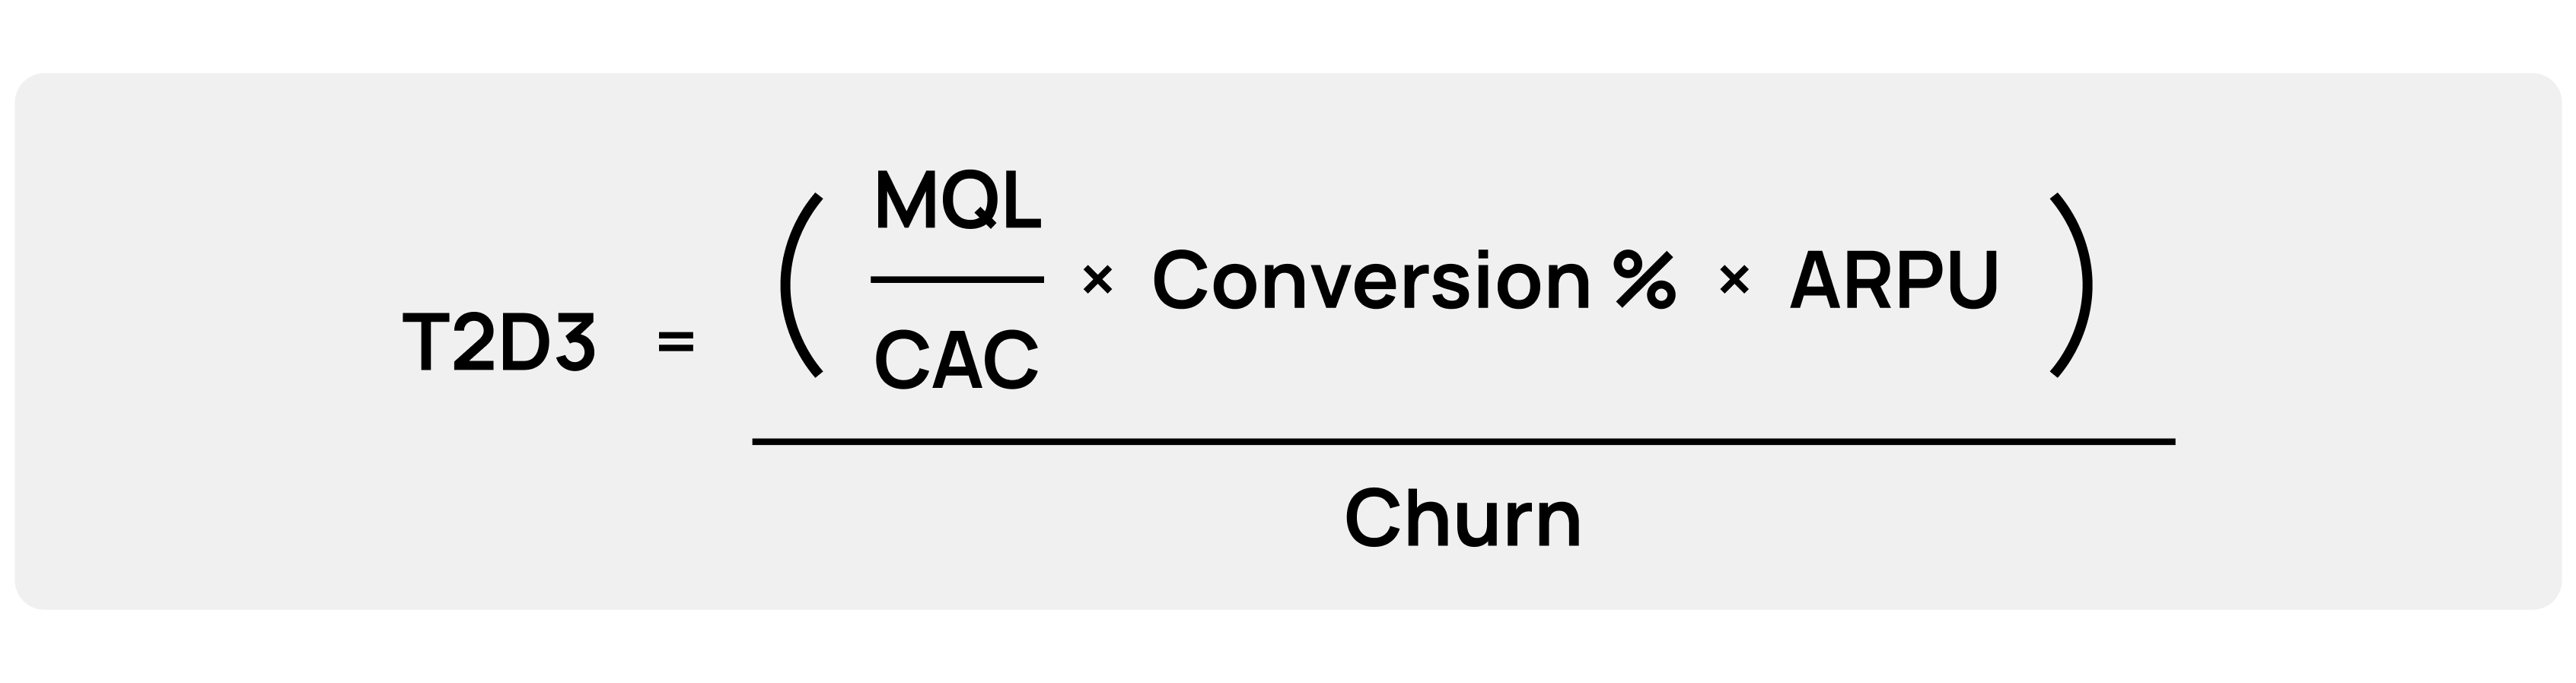 T2D3 growth equation: T2D3 = ((MQL/CAC)*Conversion%*ARPU)/Churn